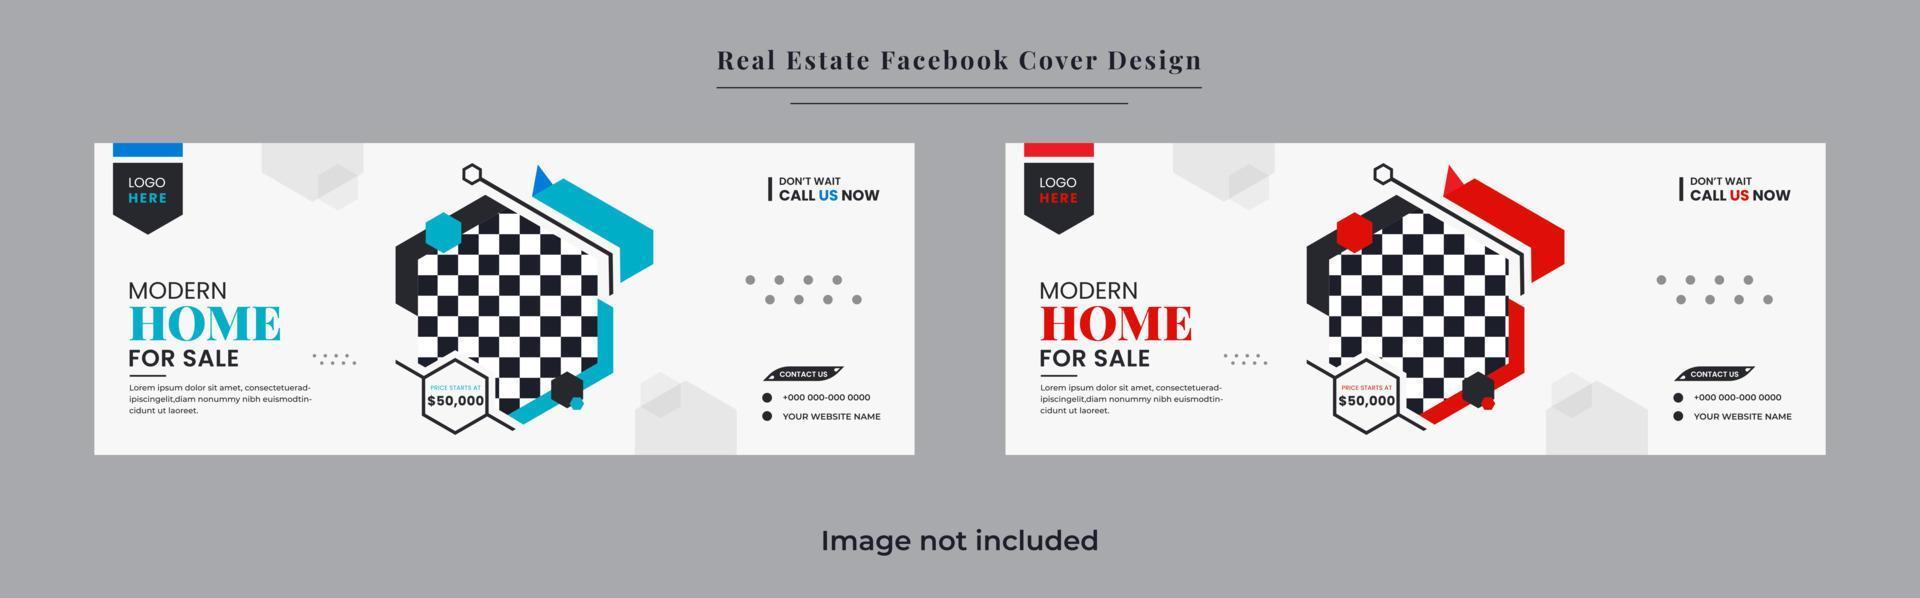 verklig egendom Hem och fast egendom försäljning social media omslag baner design vektor